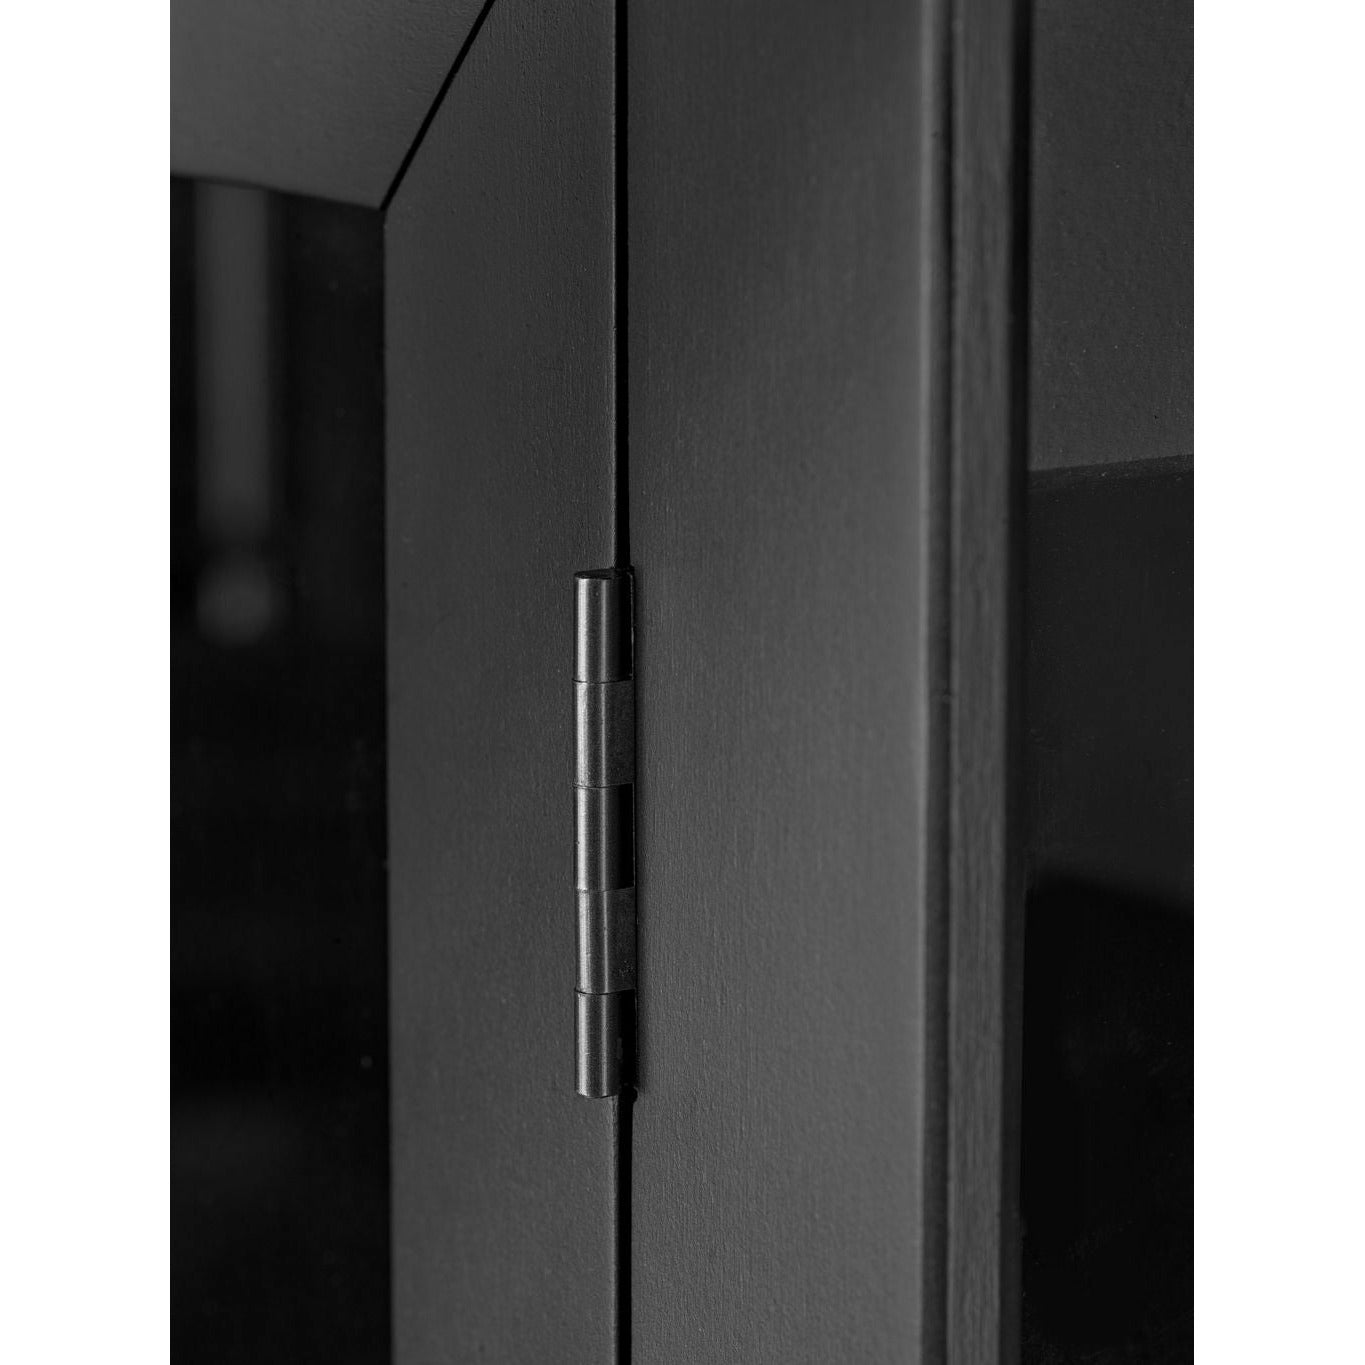 FDB Møbler A90 BODERNE Display Cabinet faggio nero laccato, H: 178 cm